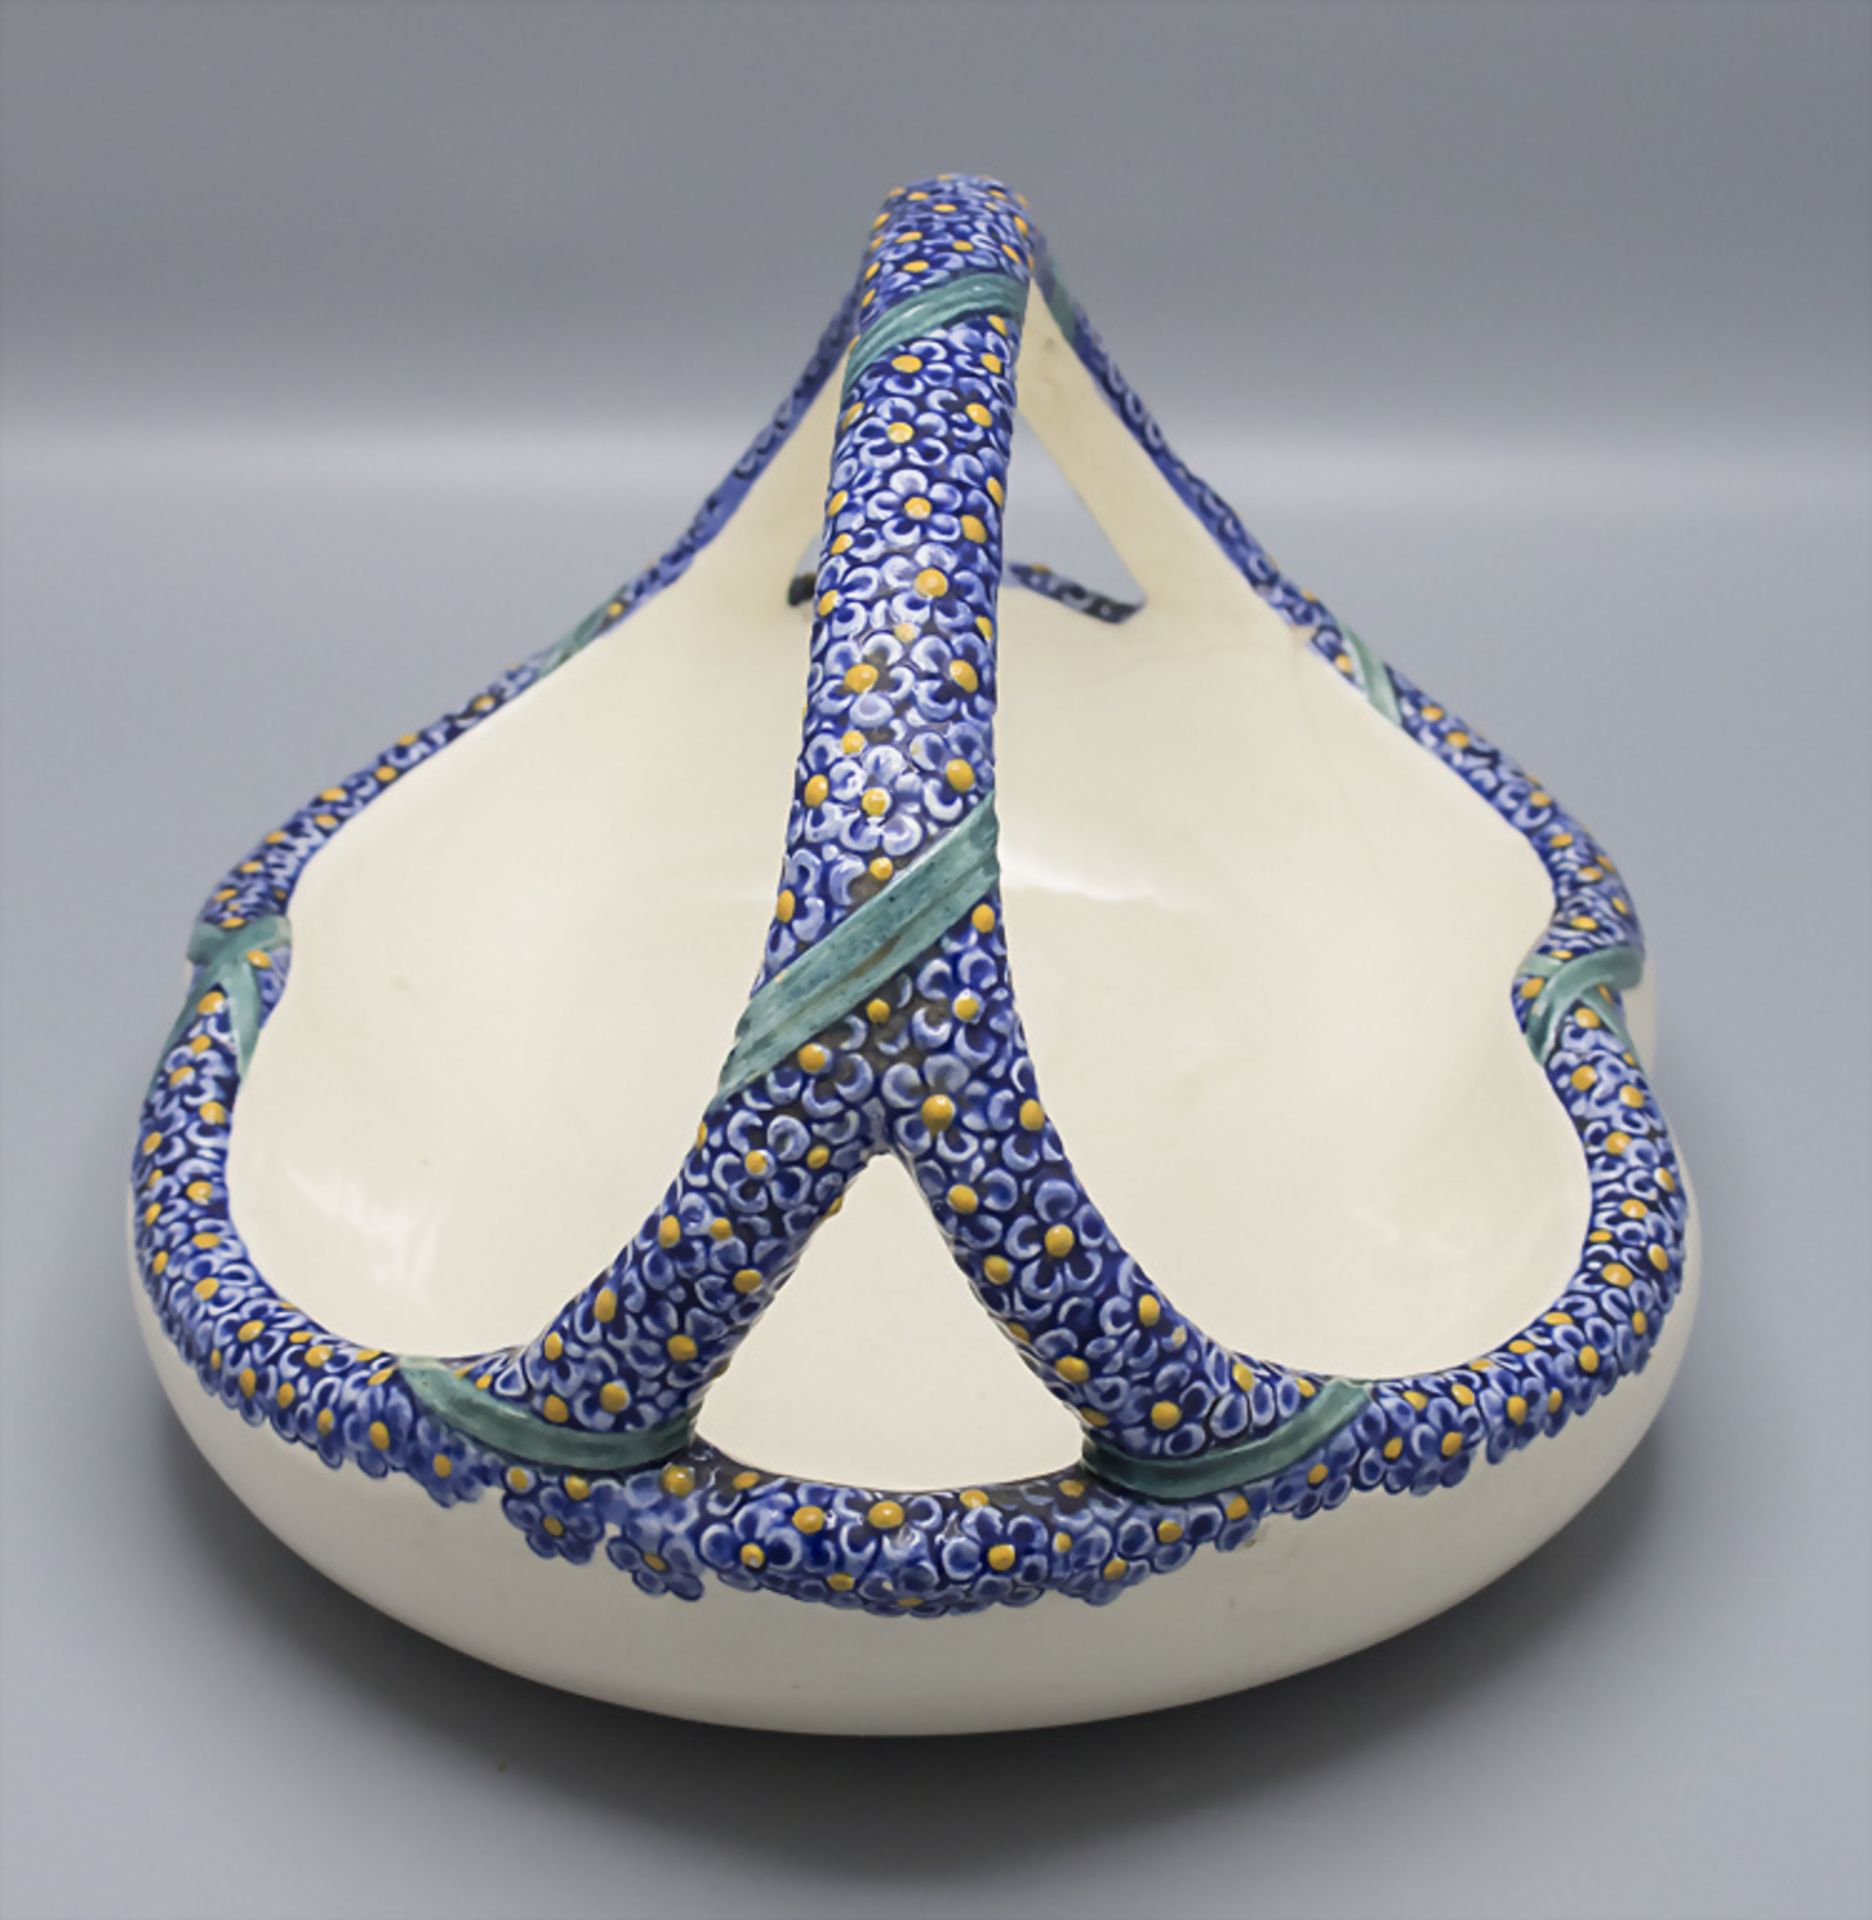 Keramikkorb / A ceramic basket, Karlsruher Majolika, um 1900 - Image 2 of 3